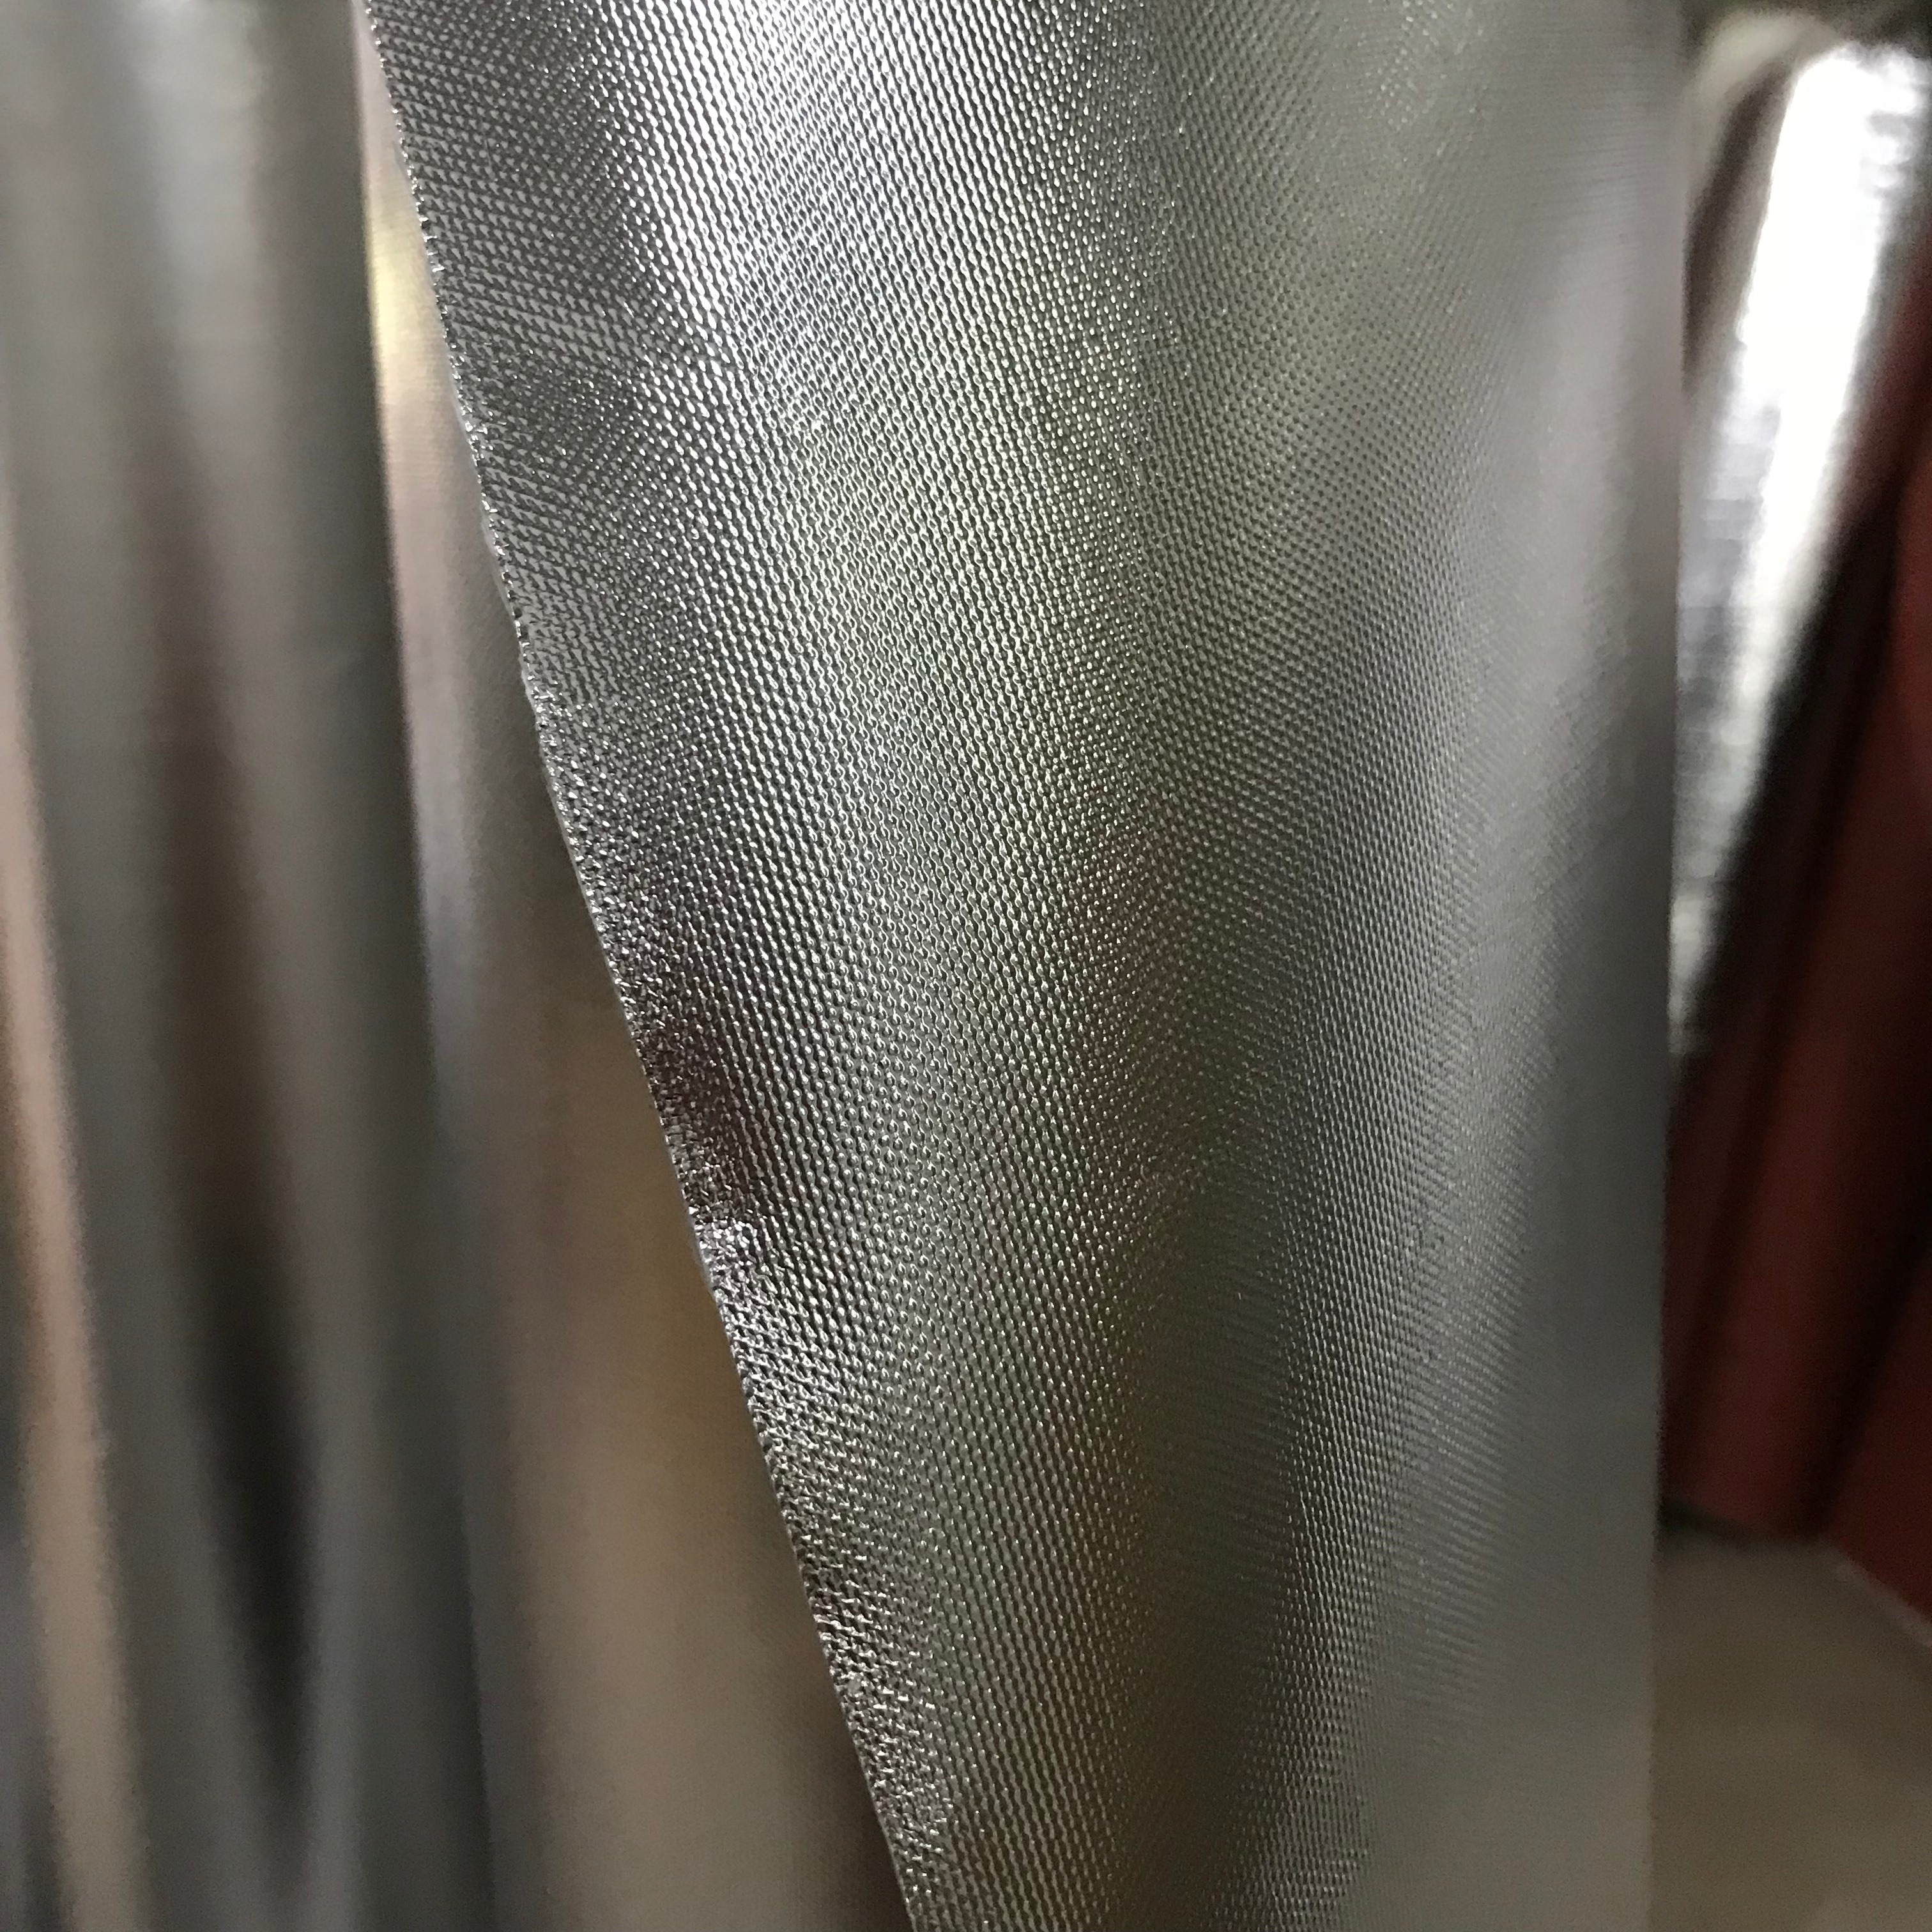 菲尔德供应铝箔布、双面保温布、铝箔隔热布